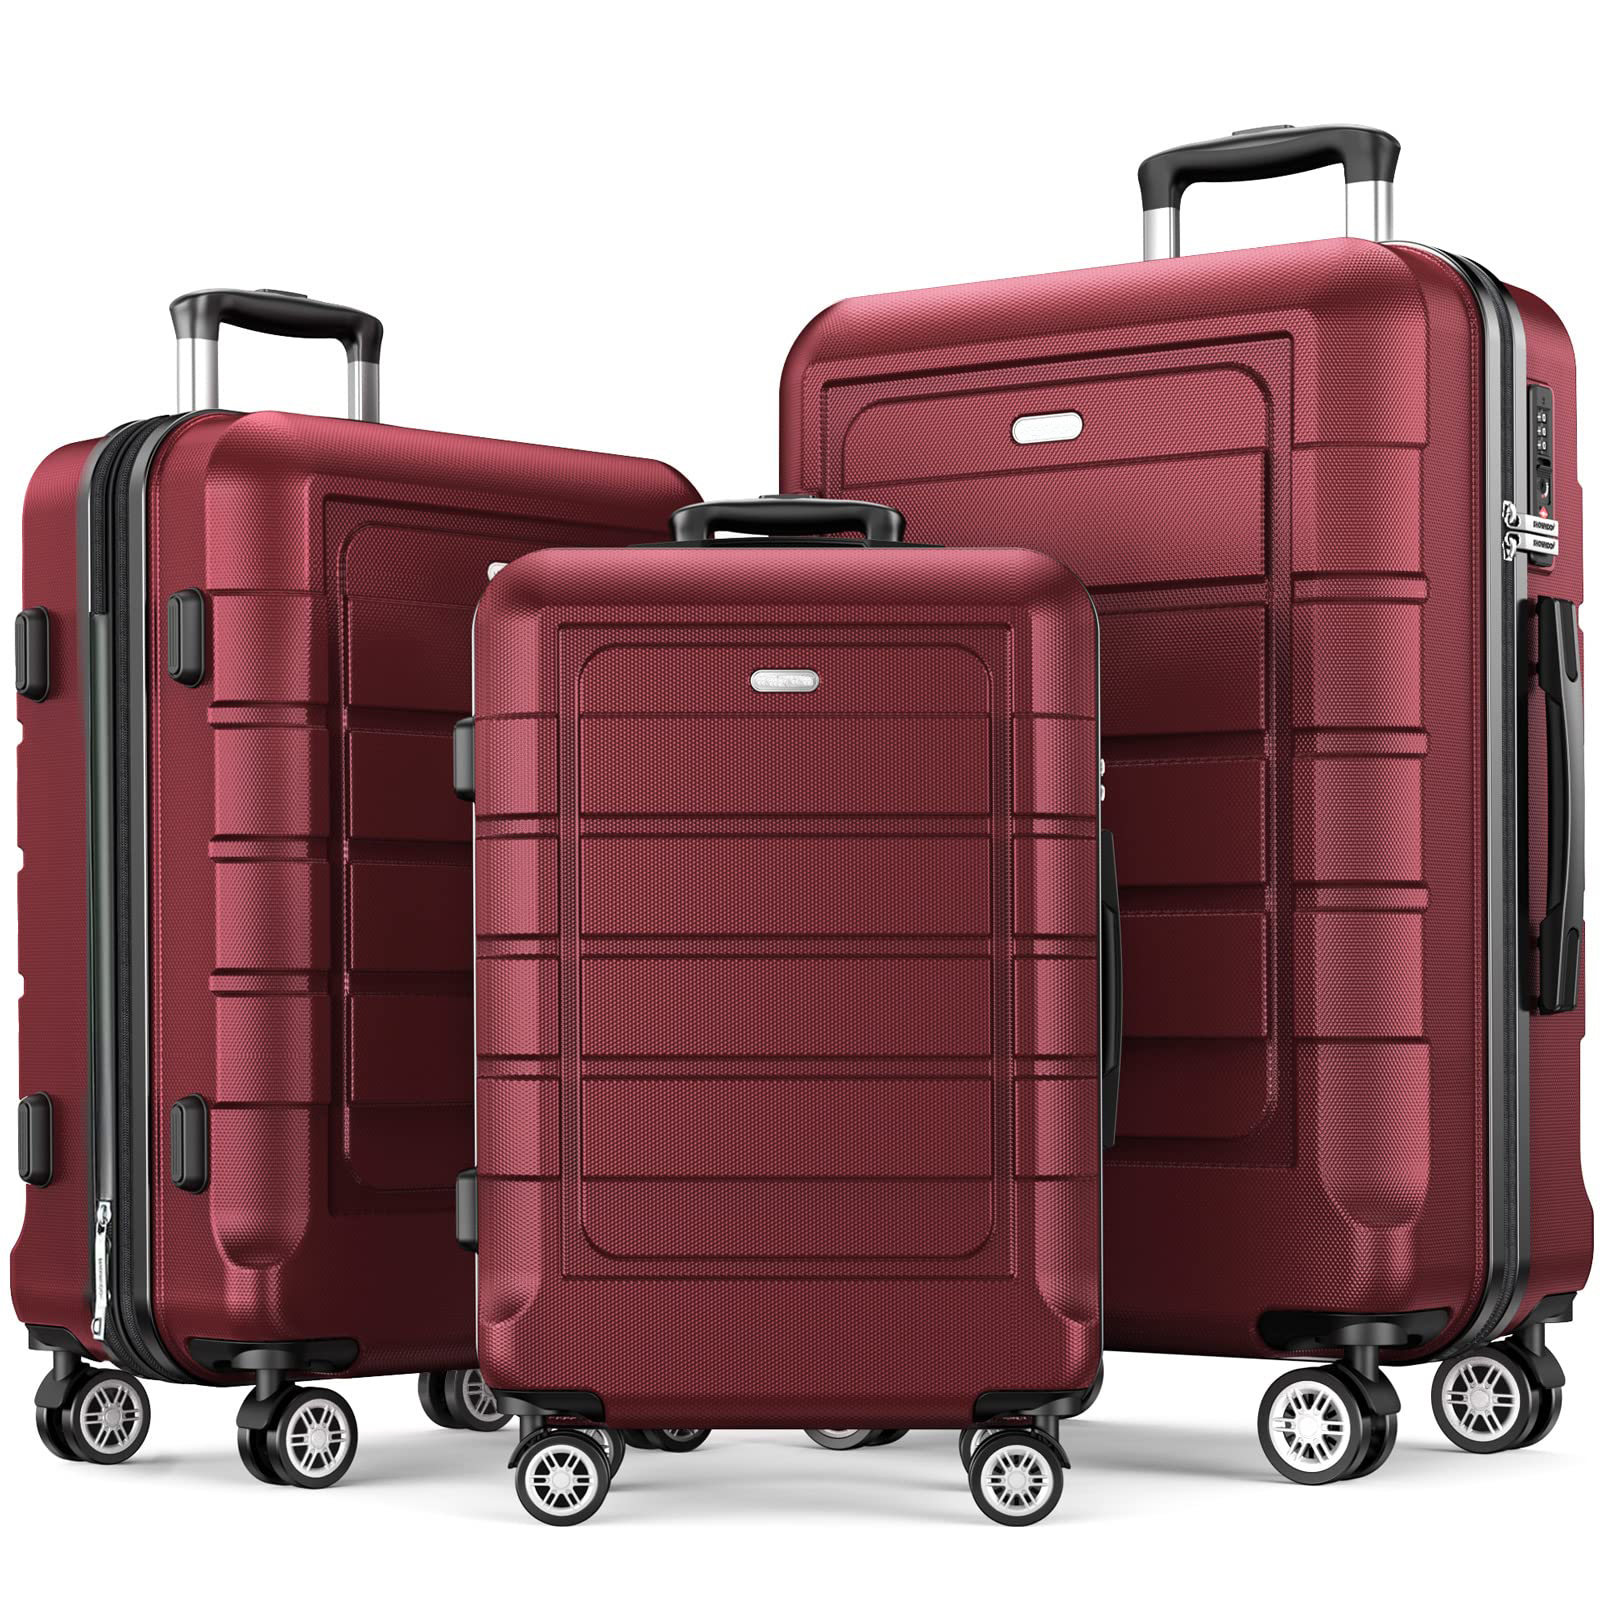 Geanta roșie din ABS este rezistentă și are o valiză rulanta cu roți